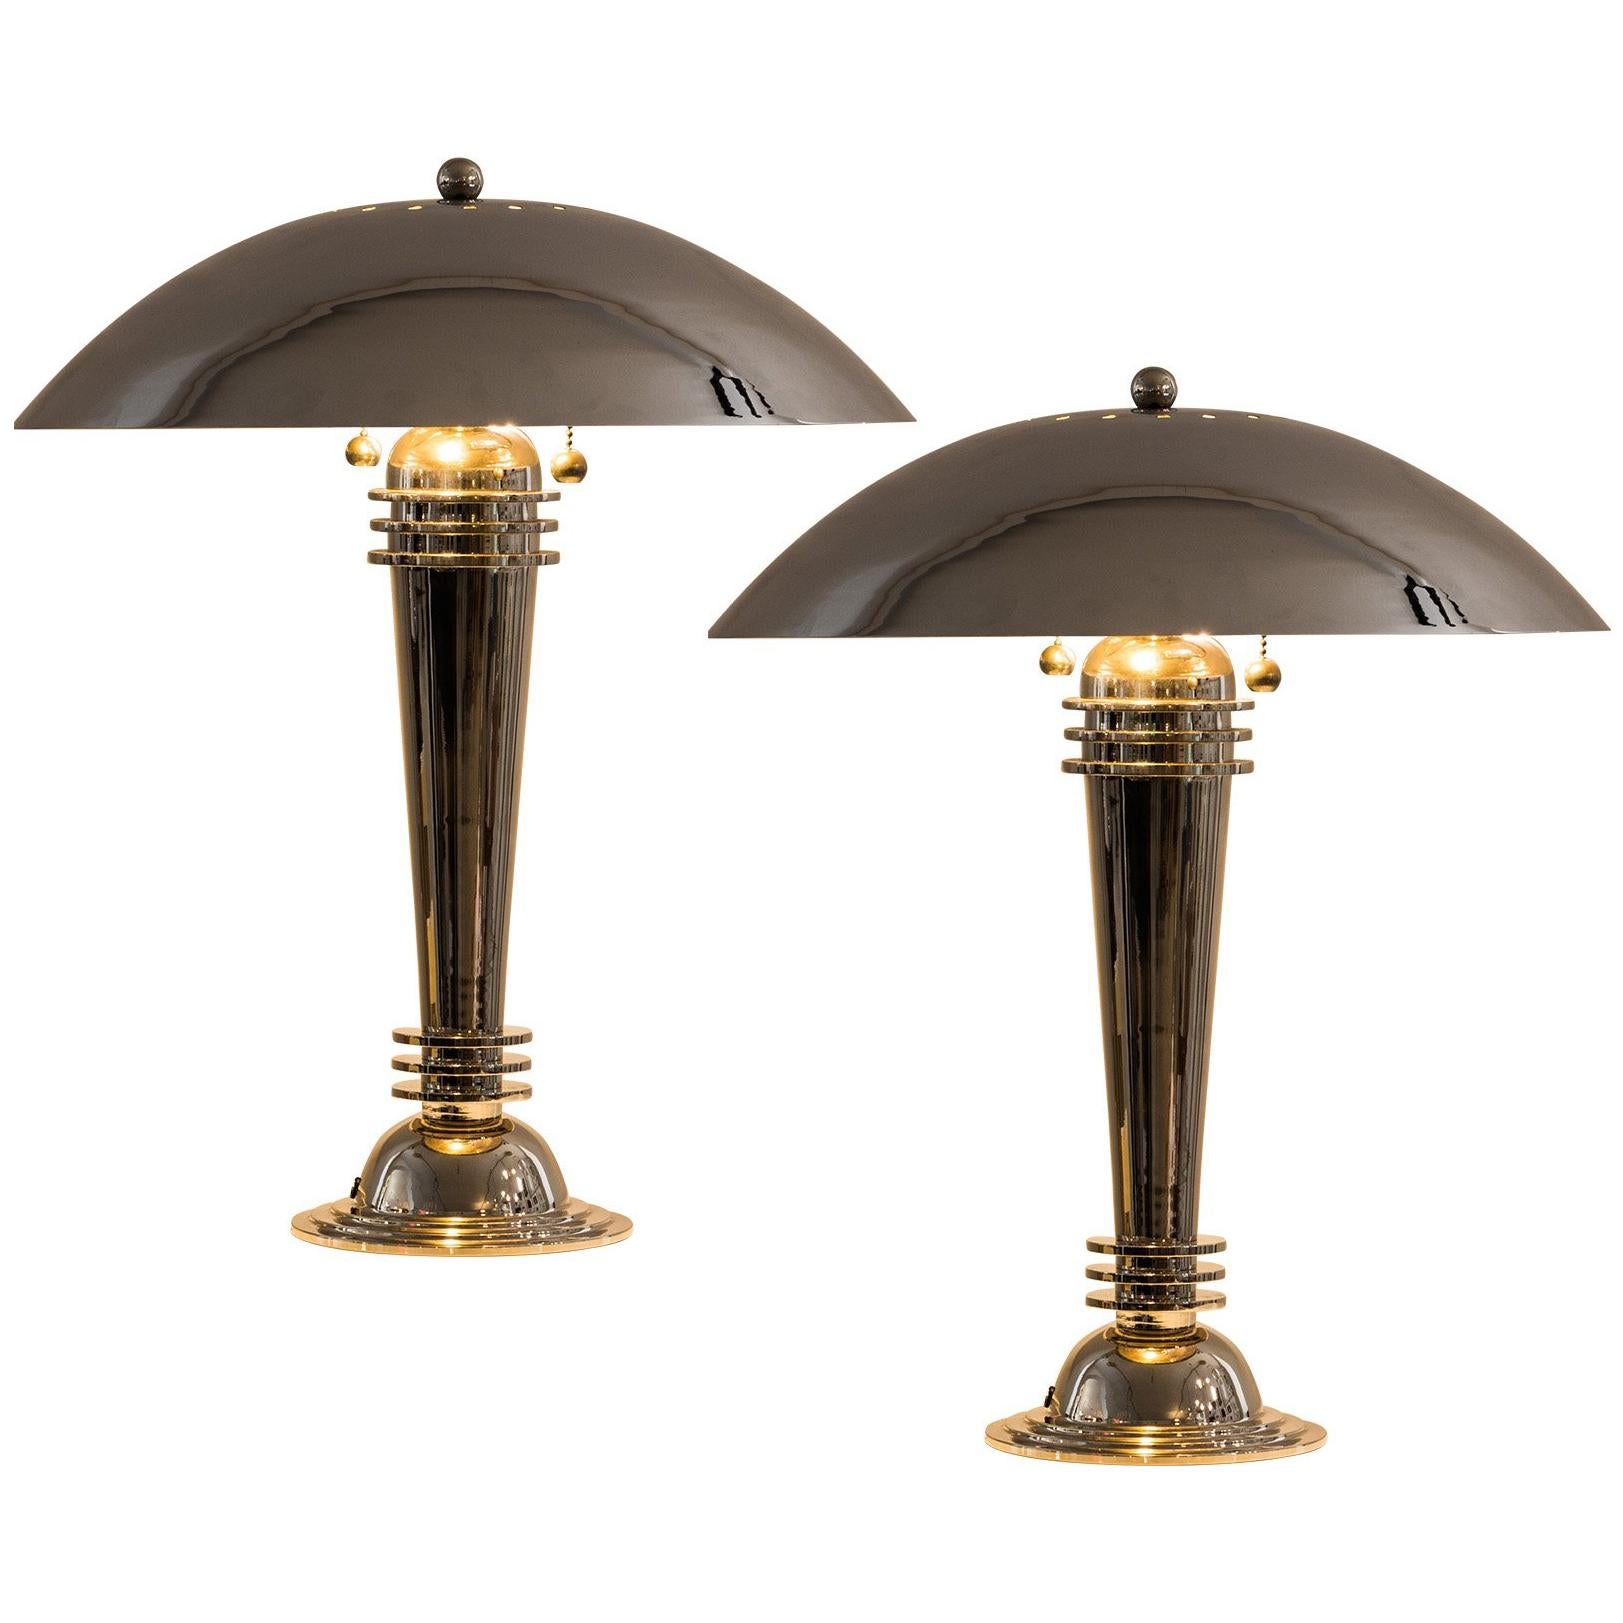 Original Art Deco Table Lamps Vintage 